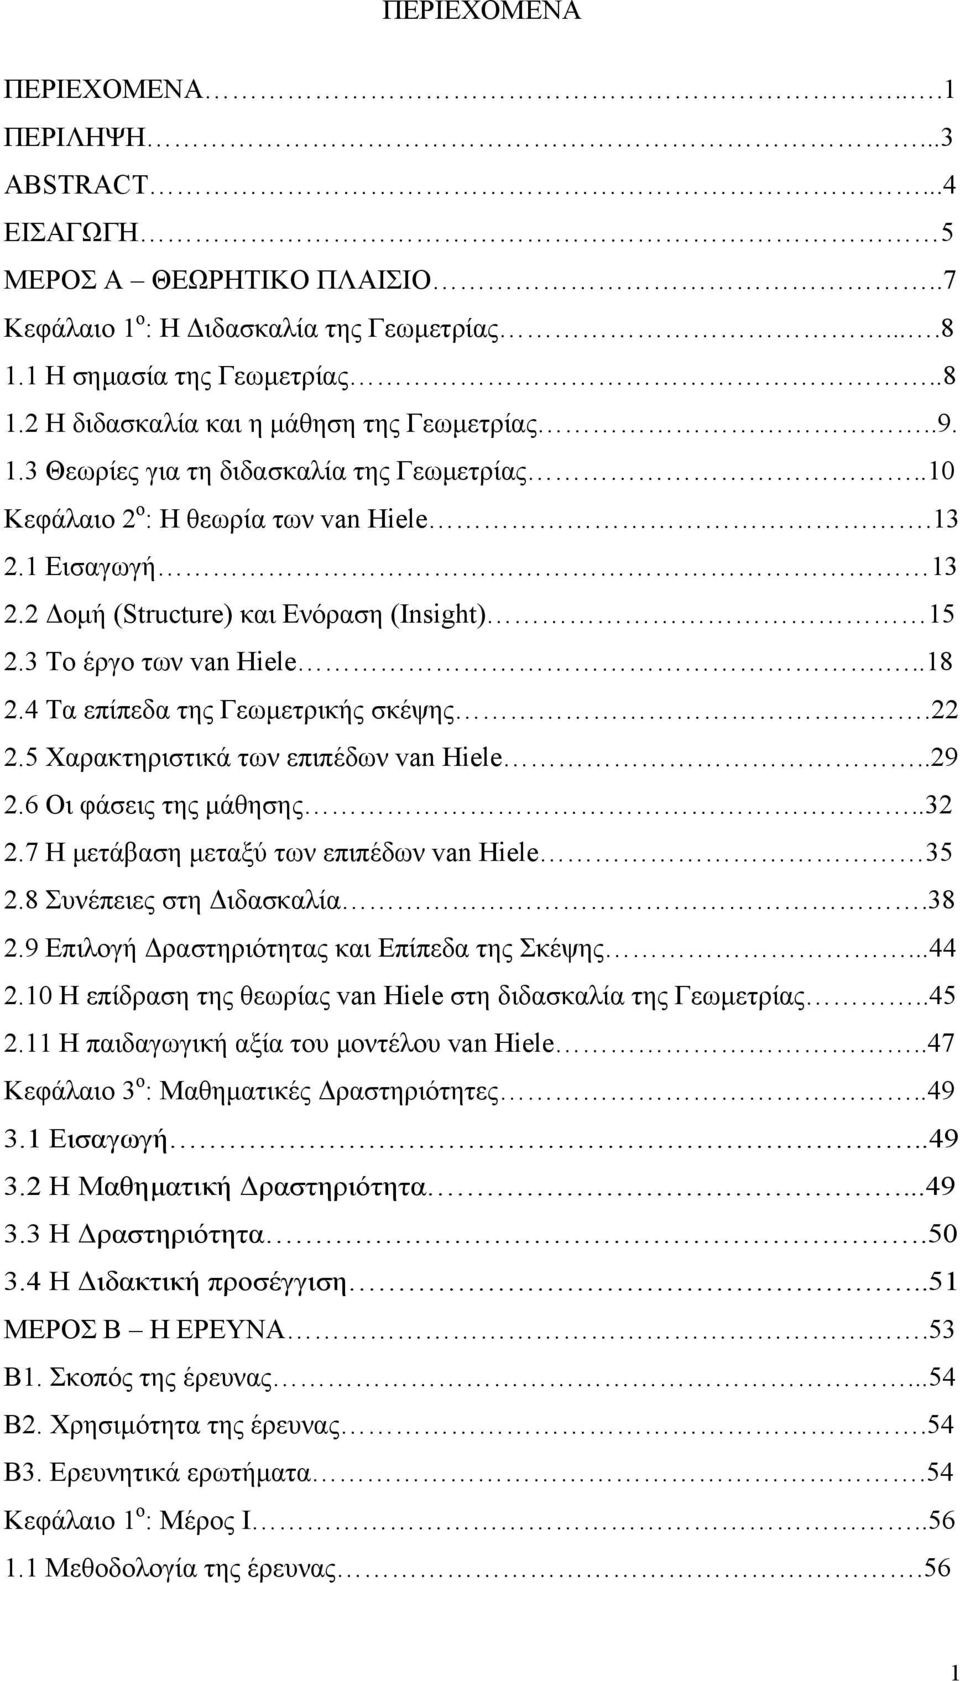 4 Τα επίπεδα της Γεωμετρικής σκέψης.22 2.5 Χαρακτηριστικά των επιπέδων van Hiele..29 2.6 Οι φάσεις της μάθησης..32 2.7 Η μετάβαση μεταξύ των επιπέδων van Hiele 35 2.8 Συνέπειες στη Διδασκαλία.38 2.